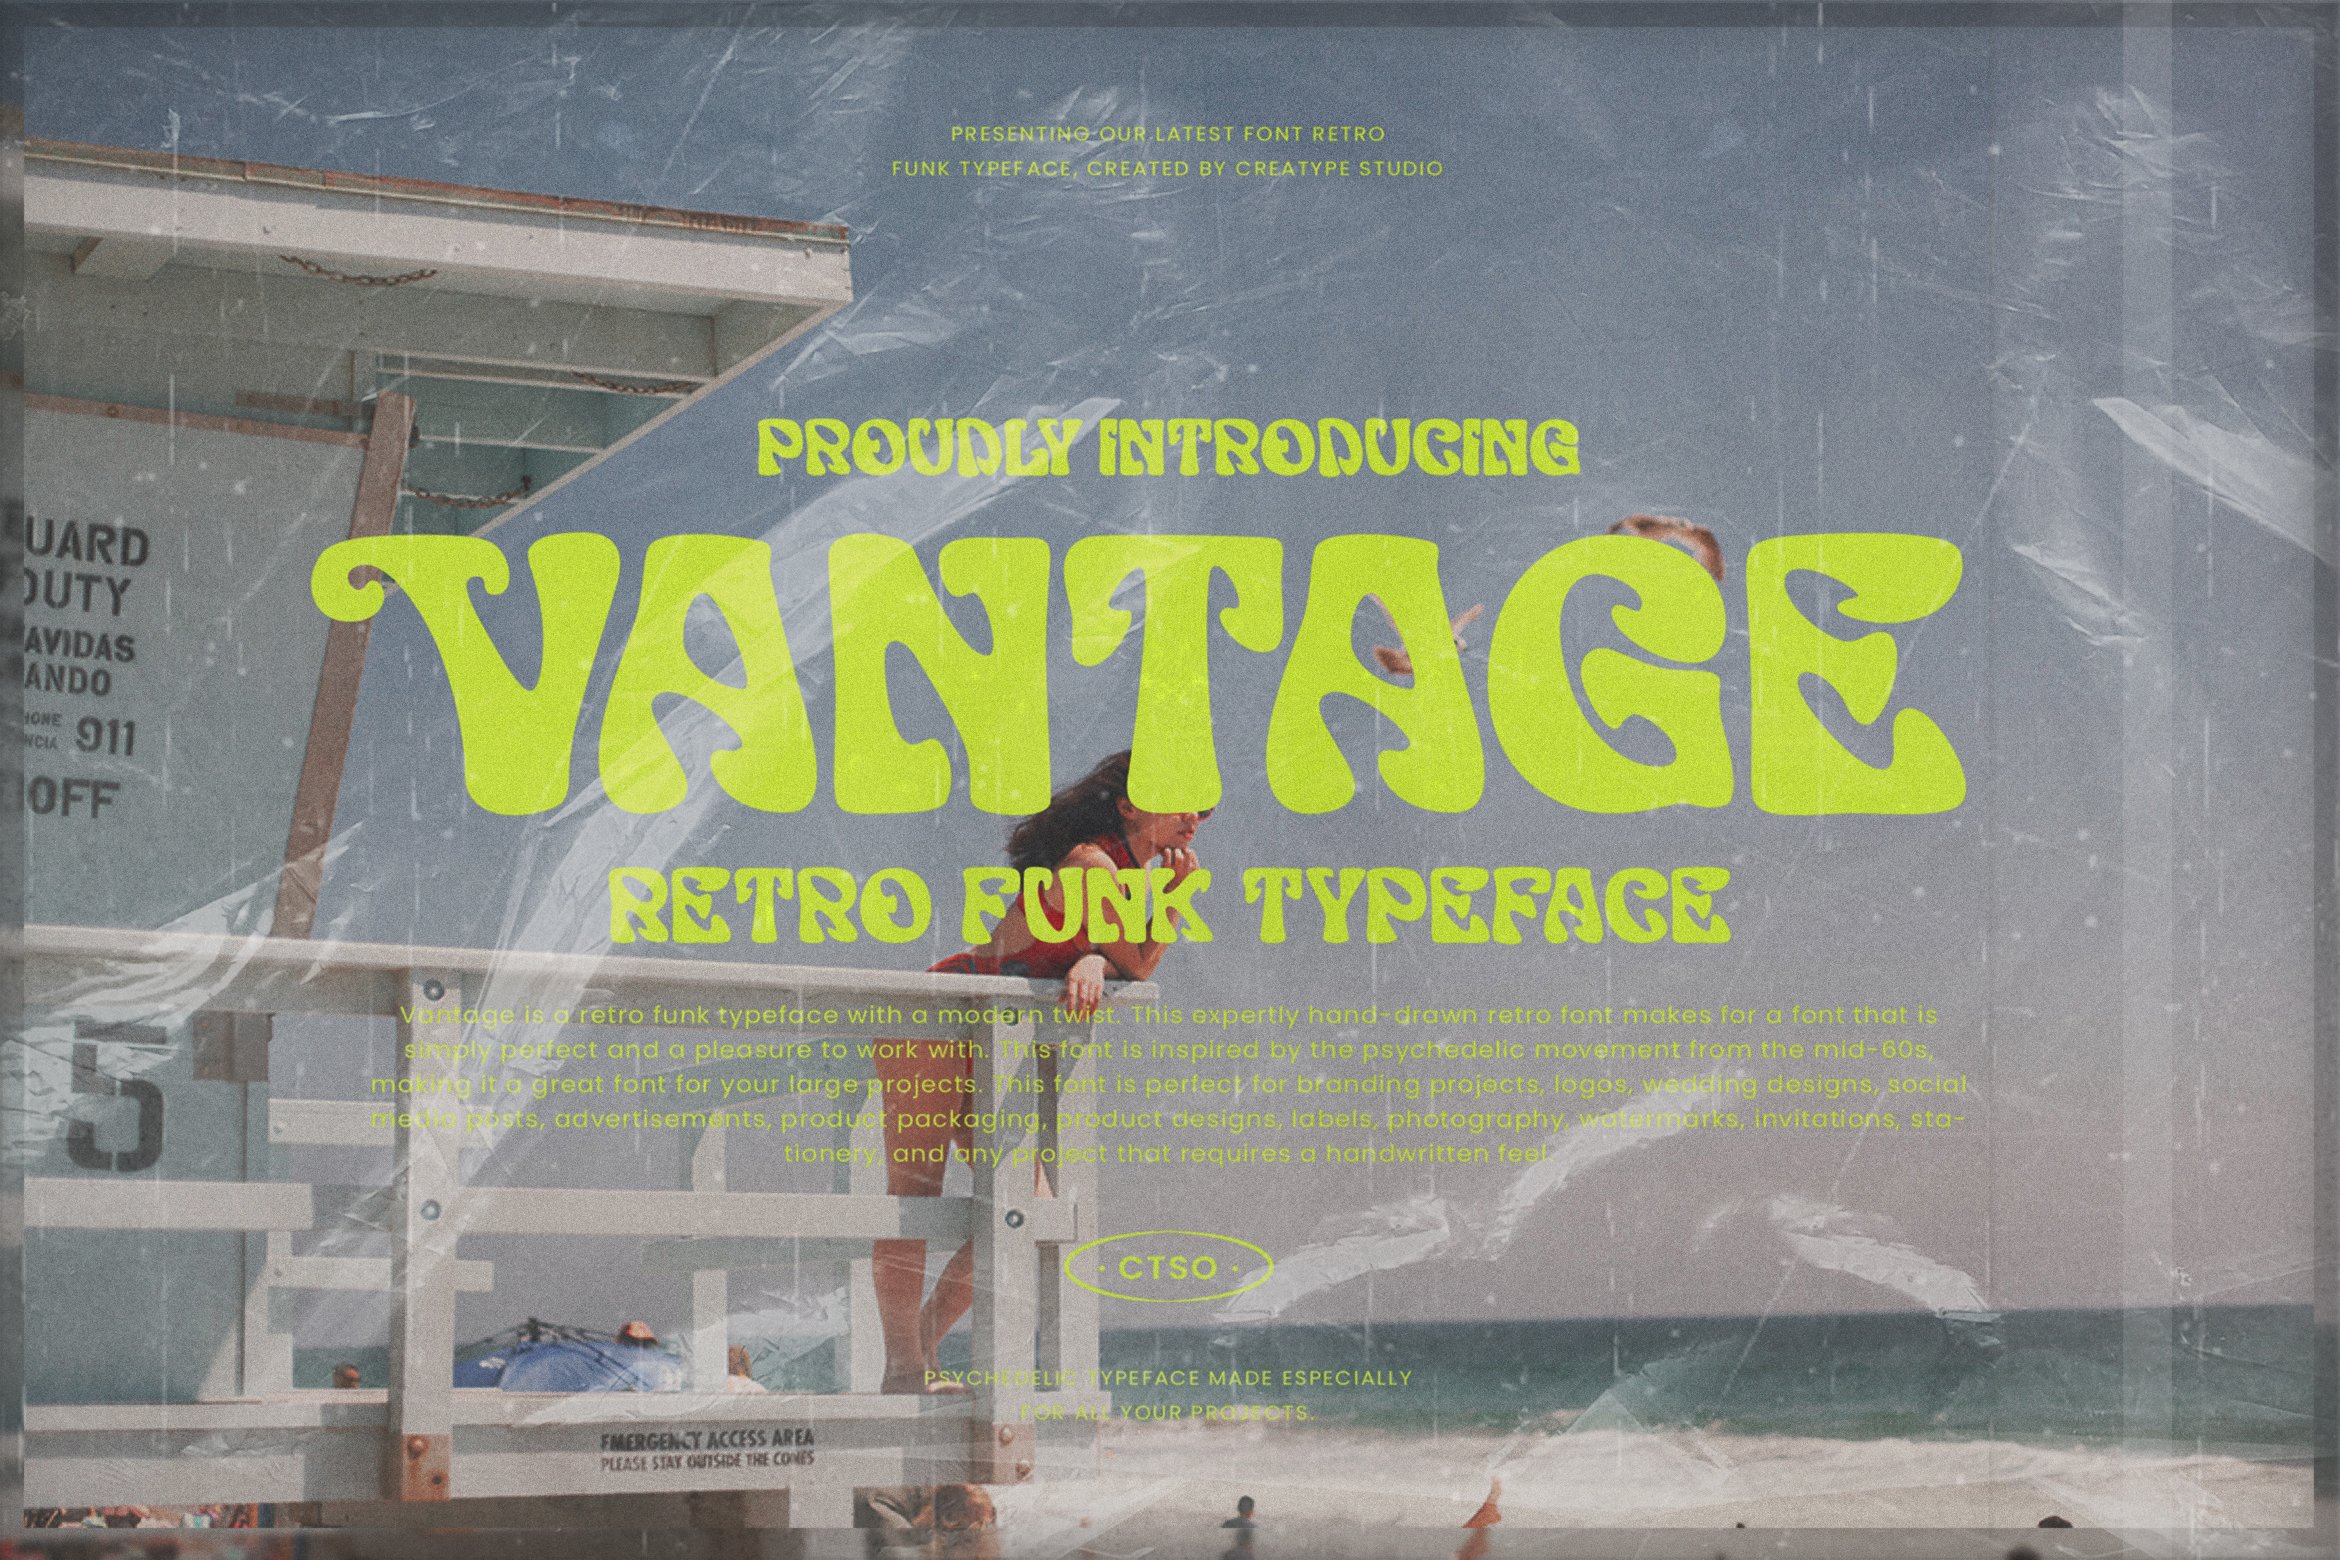 Vantage Retro Business Font cover image.